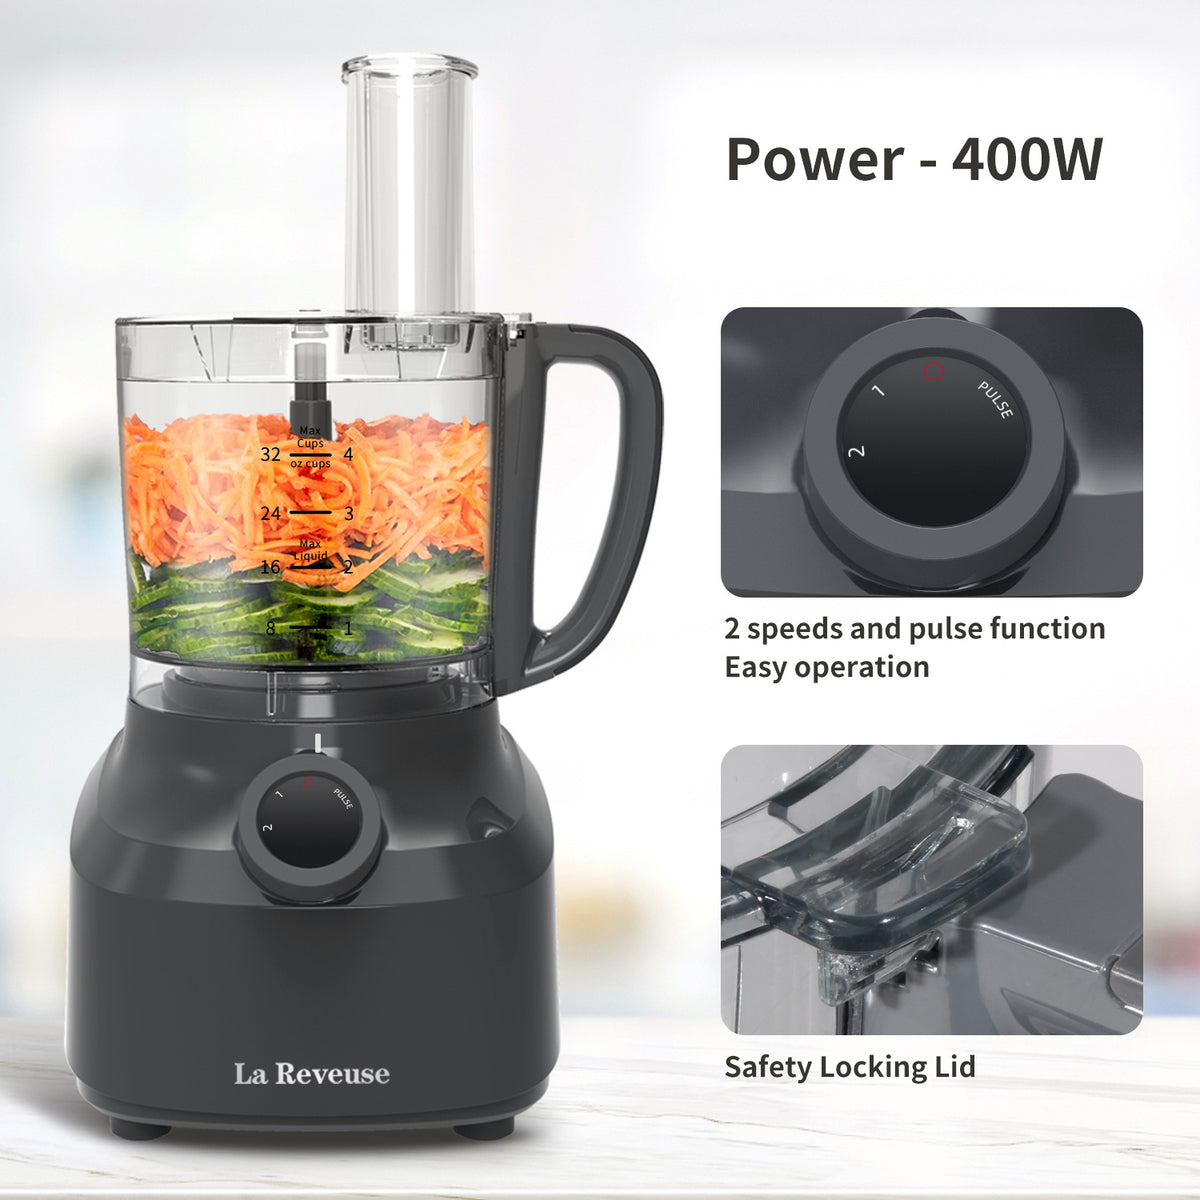 La Reveuse 4 Cup Food Processor Vegetable Chopper, 400 Watts, for Slic – La  Reveuse Home Appliances